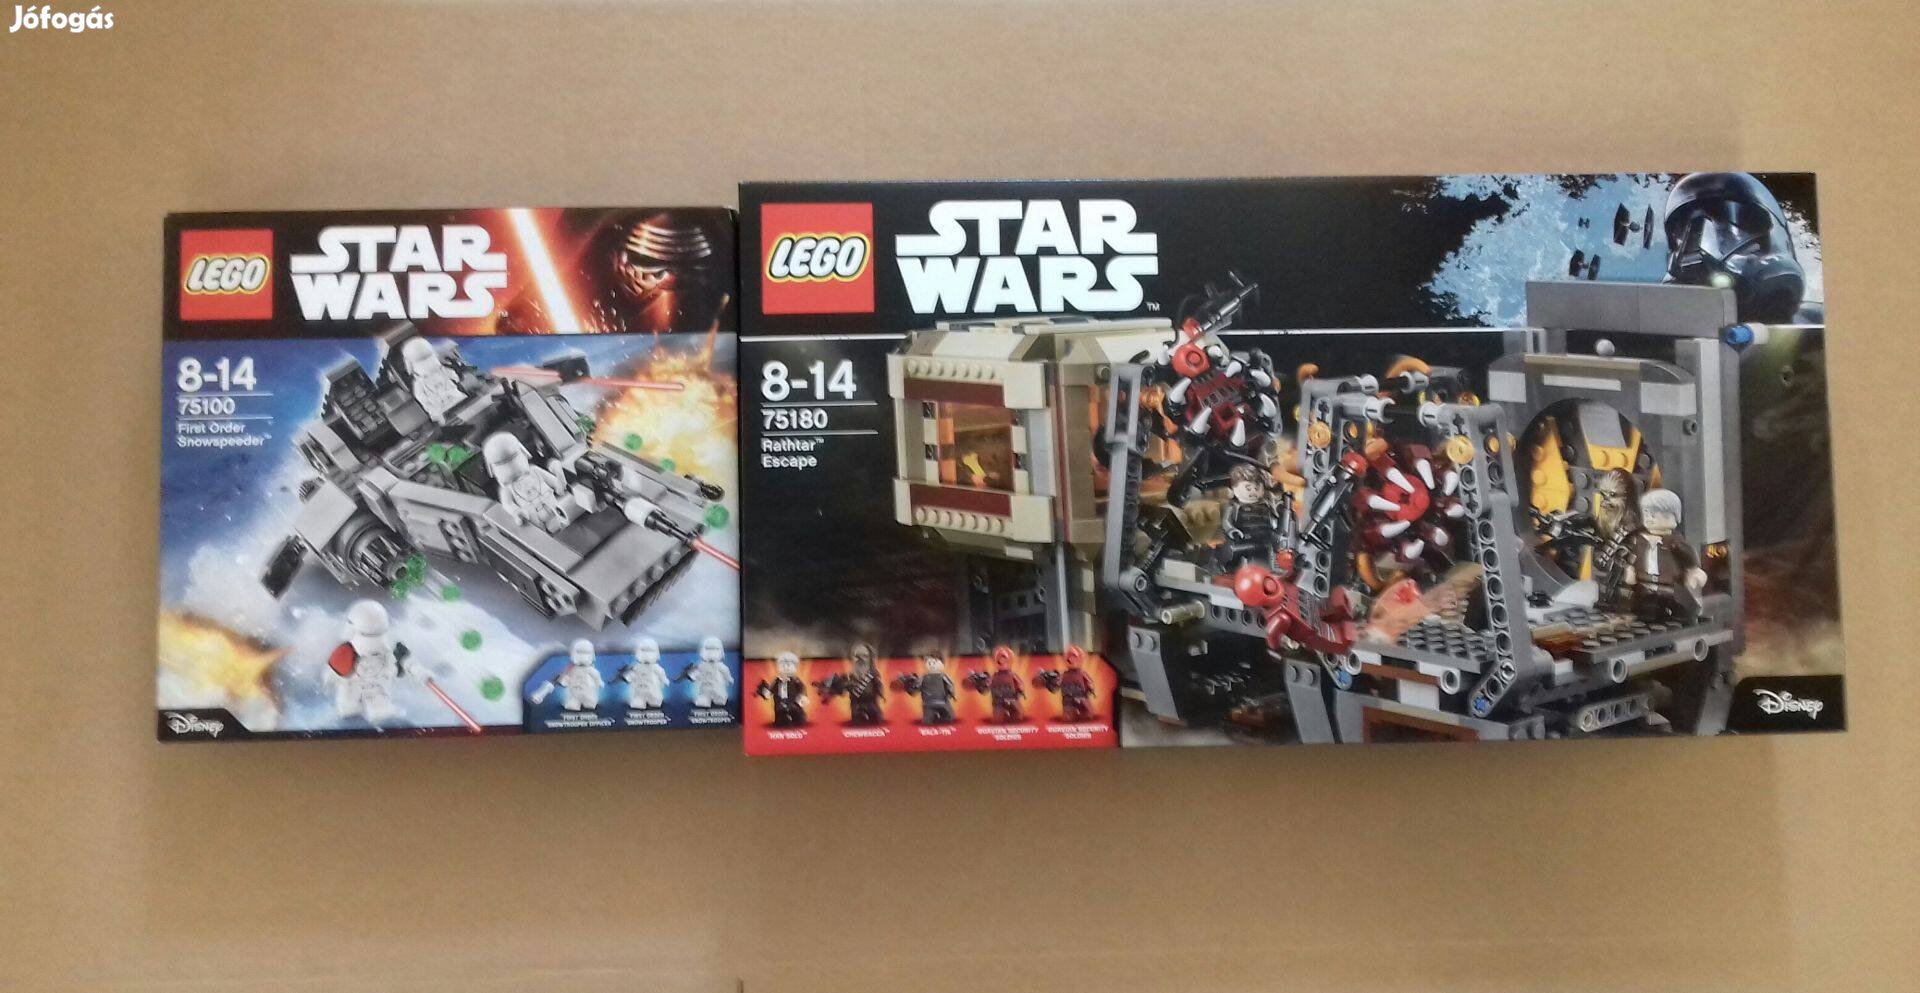 Ébredő Erő bontatlan Star Wars LEGO 75100 + 75180 Foxpost utánvét árba